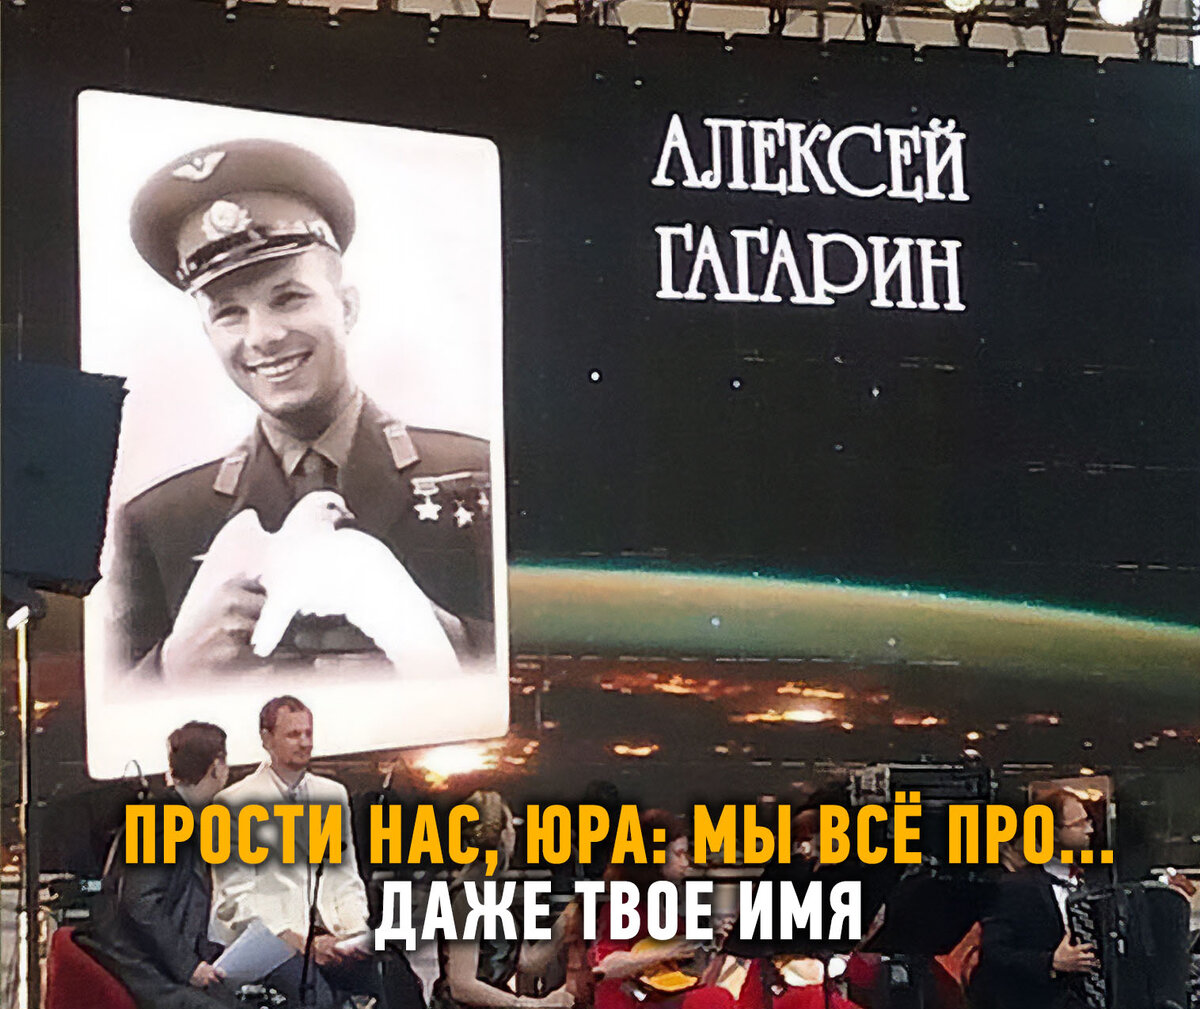 Сегодня очередной праздник великих советских достижений -- День космонавтики. Именно в этот день, 12 апреля 1961 года впервые в истории человечества в космос полетел советский человек Юрий Гагарин.